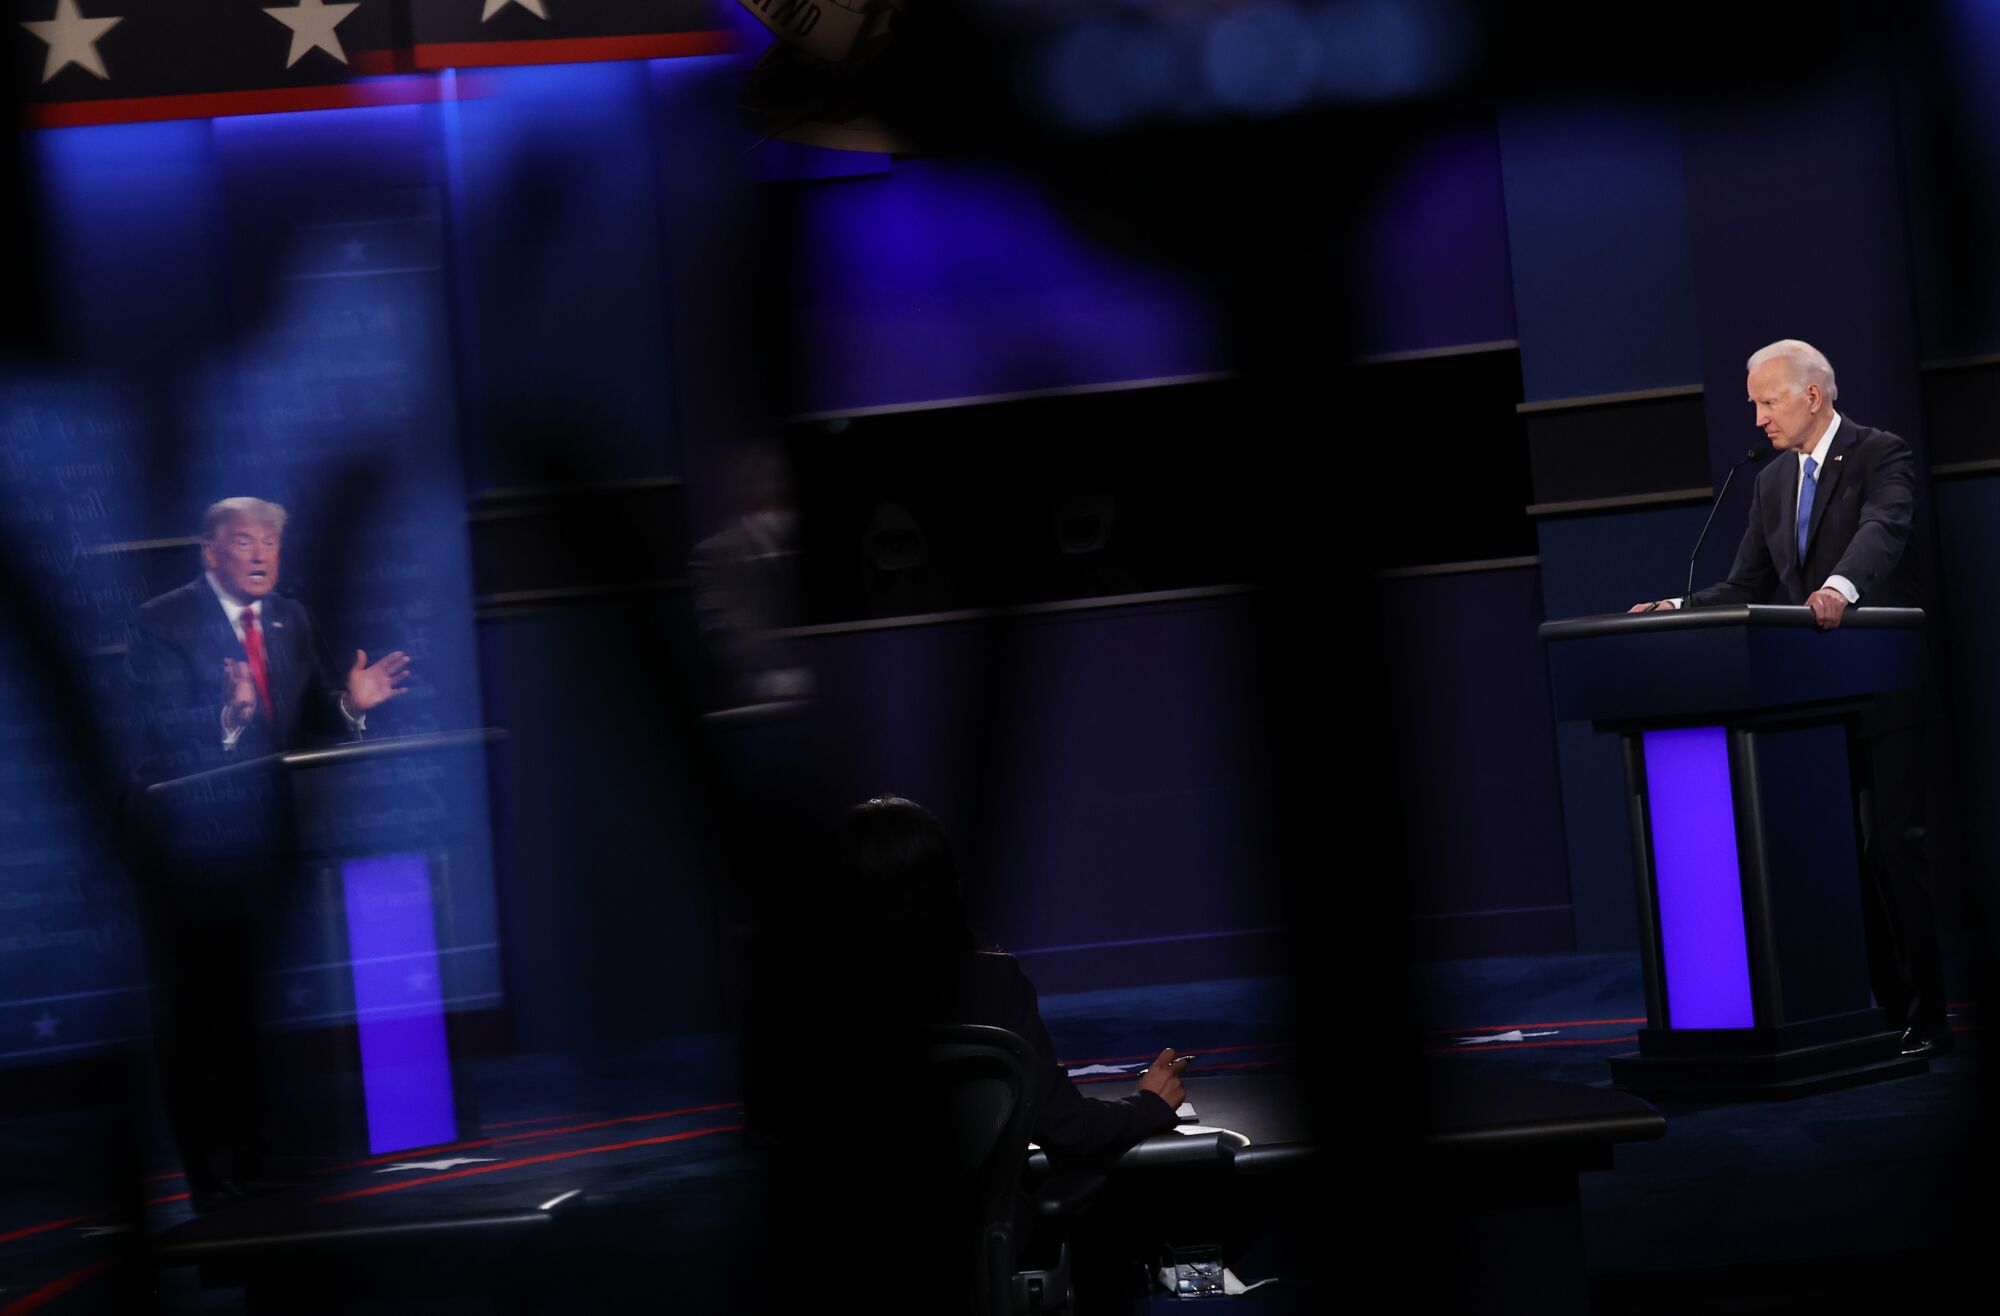 President Trump and Joe Biden onstage at the debate